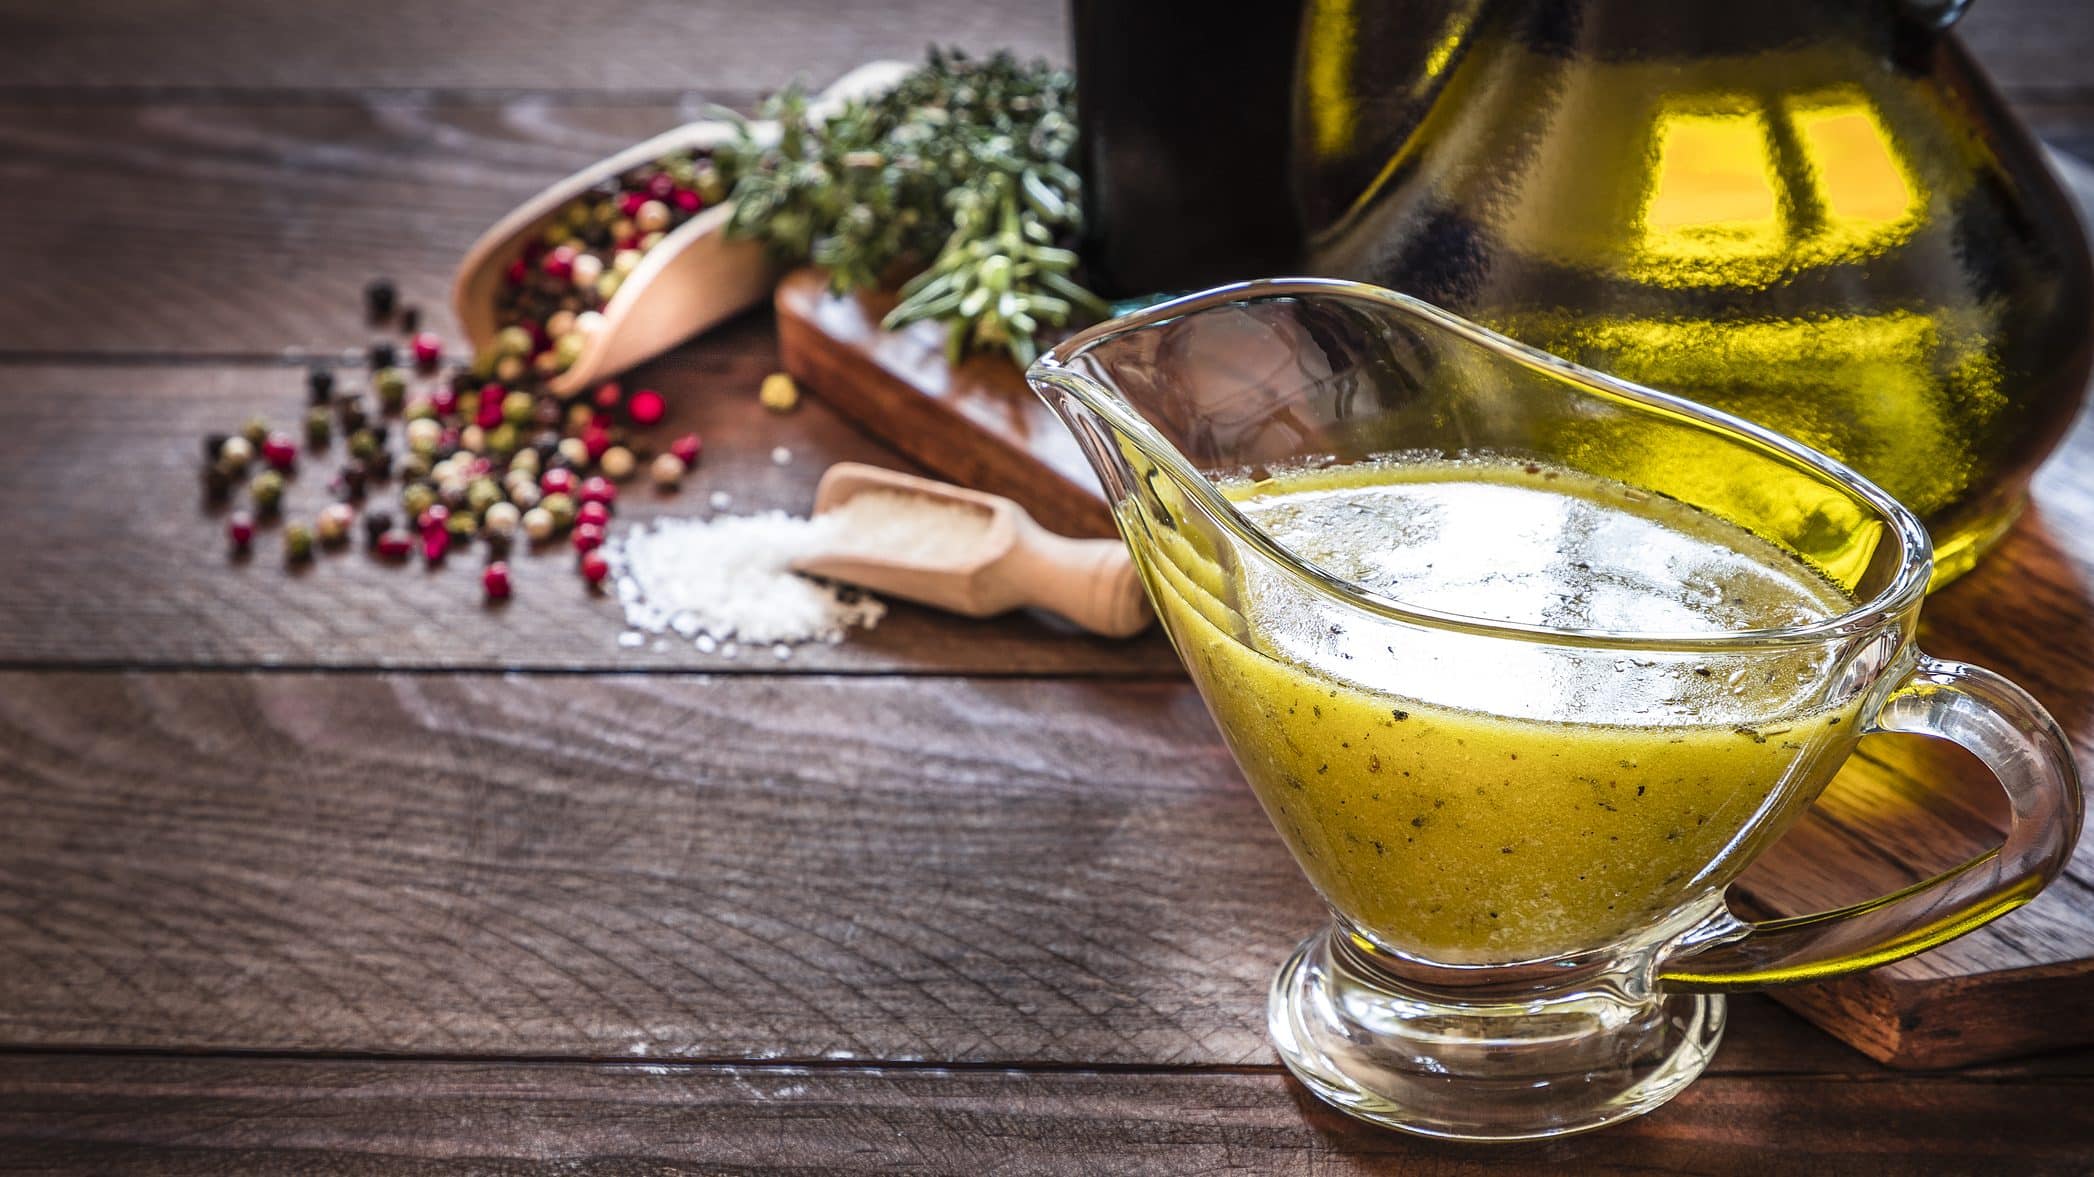 Auf einem Holztisch steht eine Sauciere aus Glas. In dieser ist eine klassische Vinaigrette. Dabei handelt e sich um ein Salatdressing. Zu sehen sind auch eine Glasflasche mit Olivenöl, Pfefferkörner und Kräuter. Sowie ein Holzlöffel mit Salz.